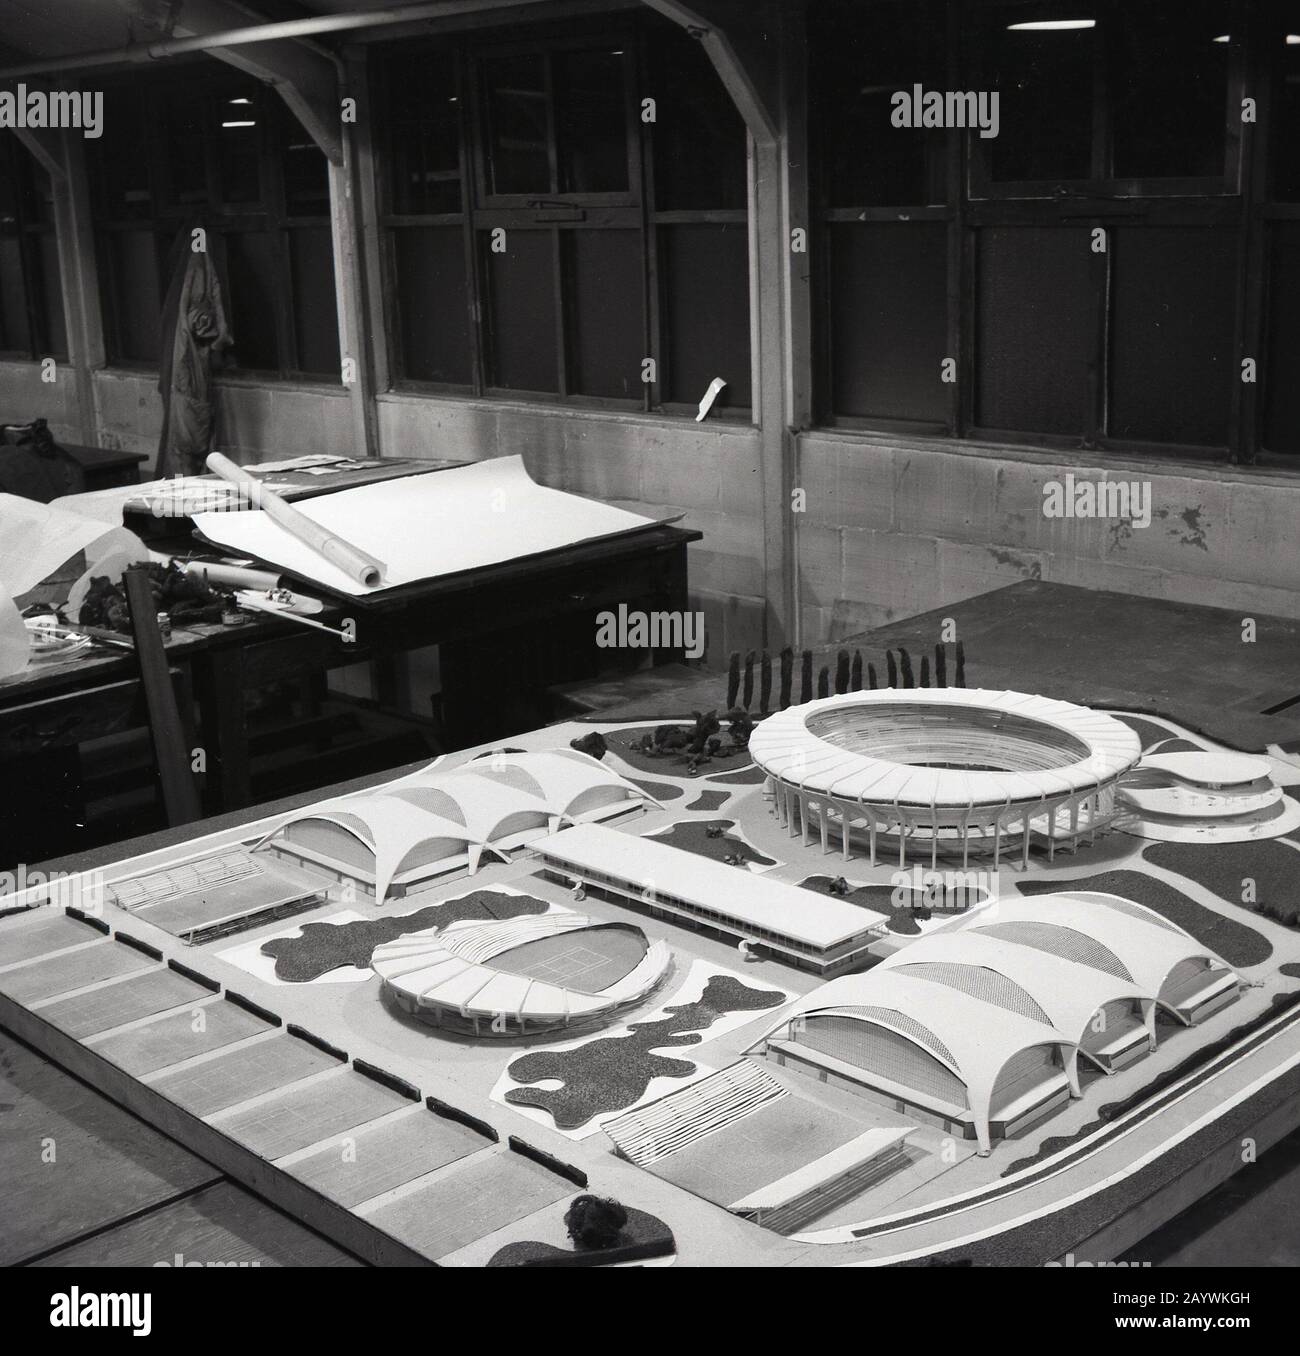 1950er Jahre, historisch, ein architektonisches Modell oder eine Verspottung einer neuen Tennisarena und von Tennisplätzen außerhalb auf einem Tisch in einem Architektenstudio, England, Großbritannien. Stockfoto